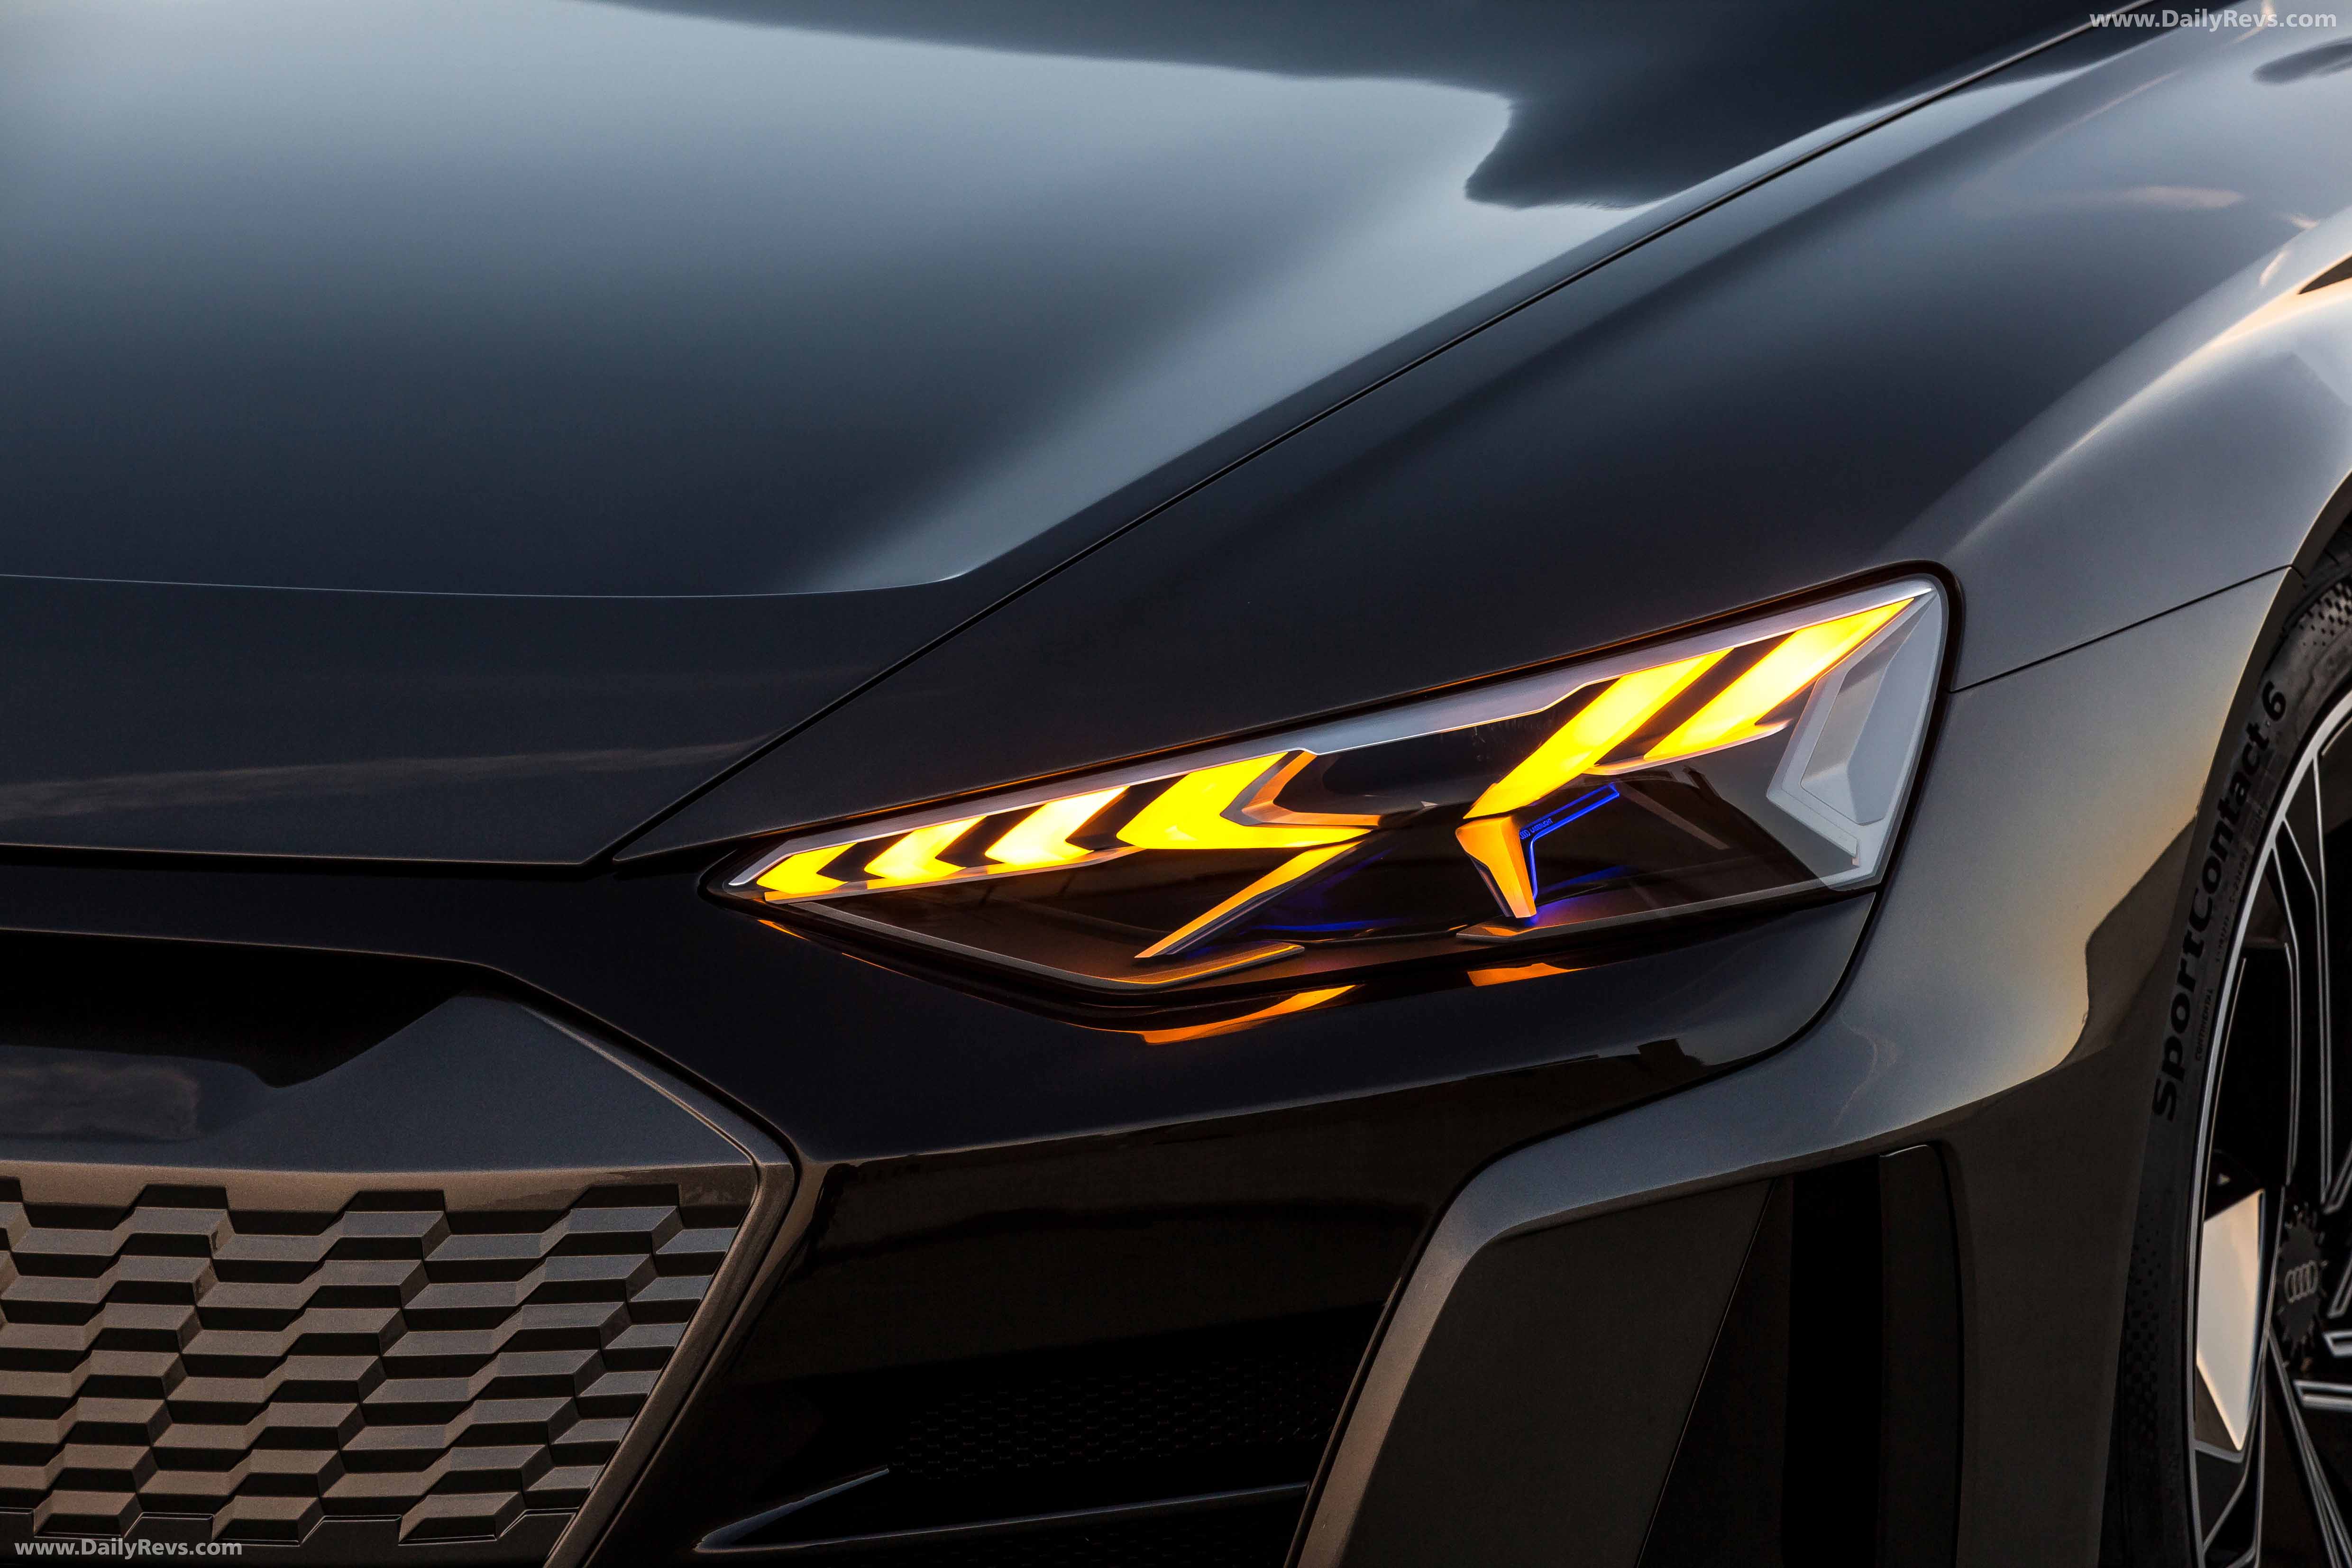 2018 Audi E Tron GT Concept